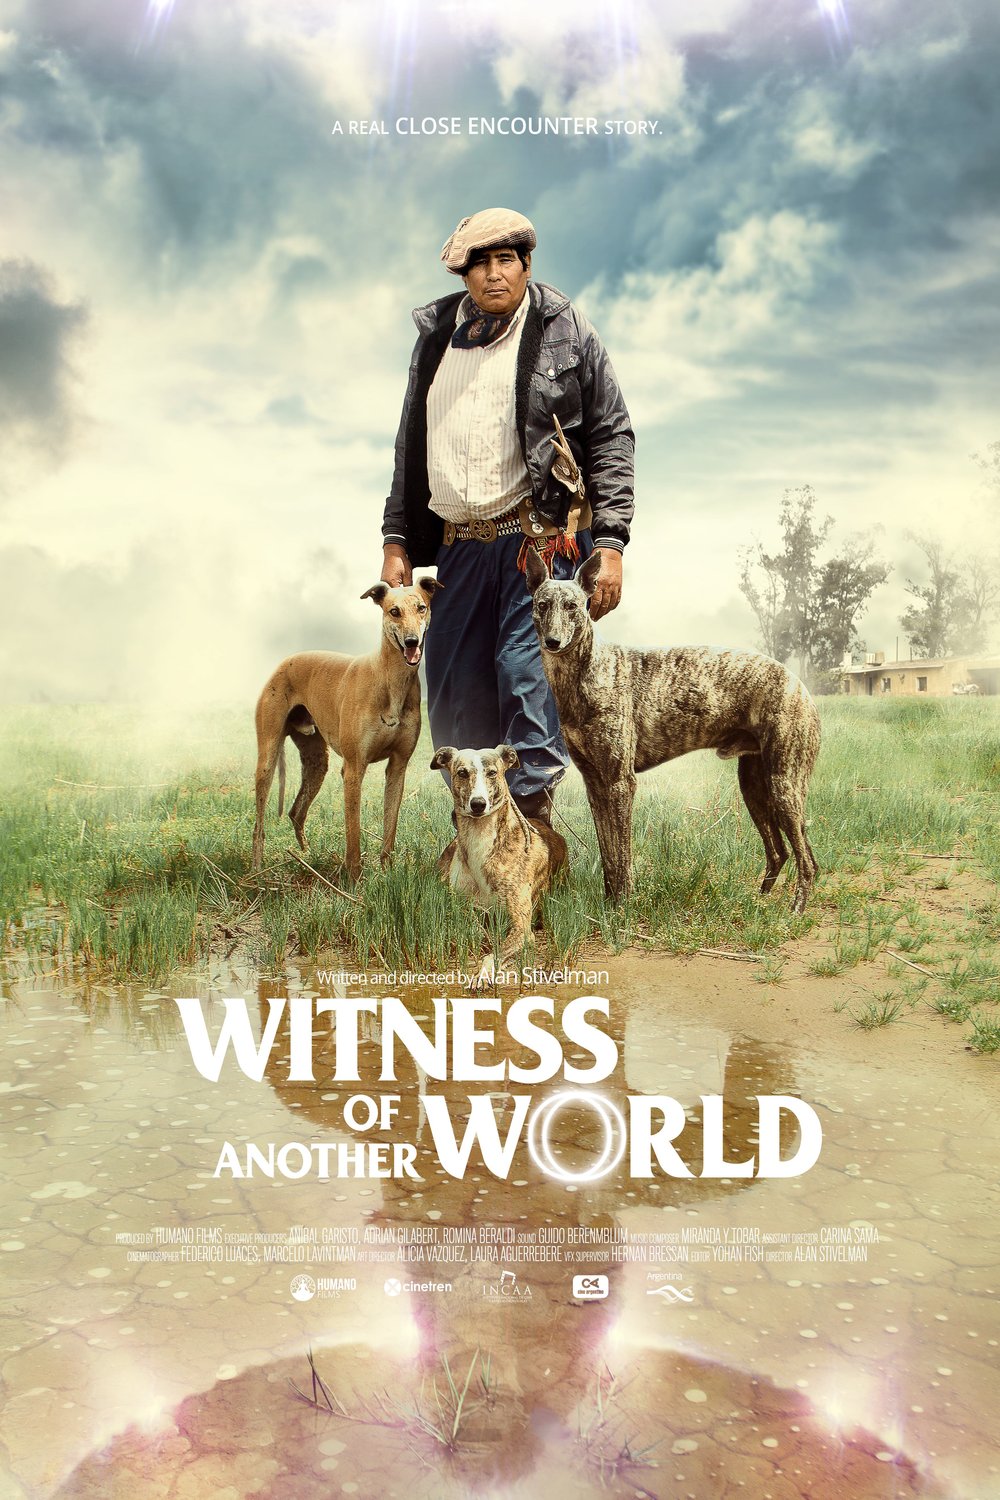 Poster of the movie Testigo de otro mundo